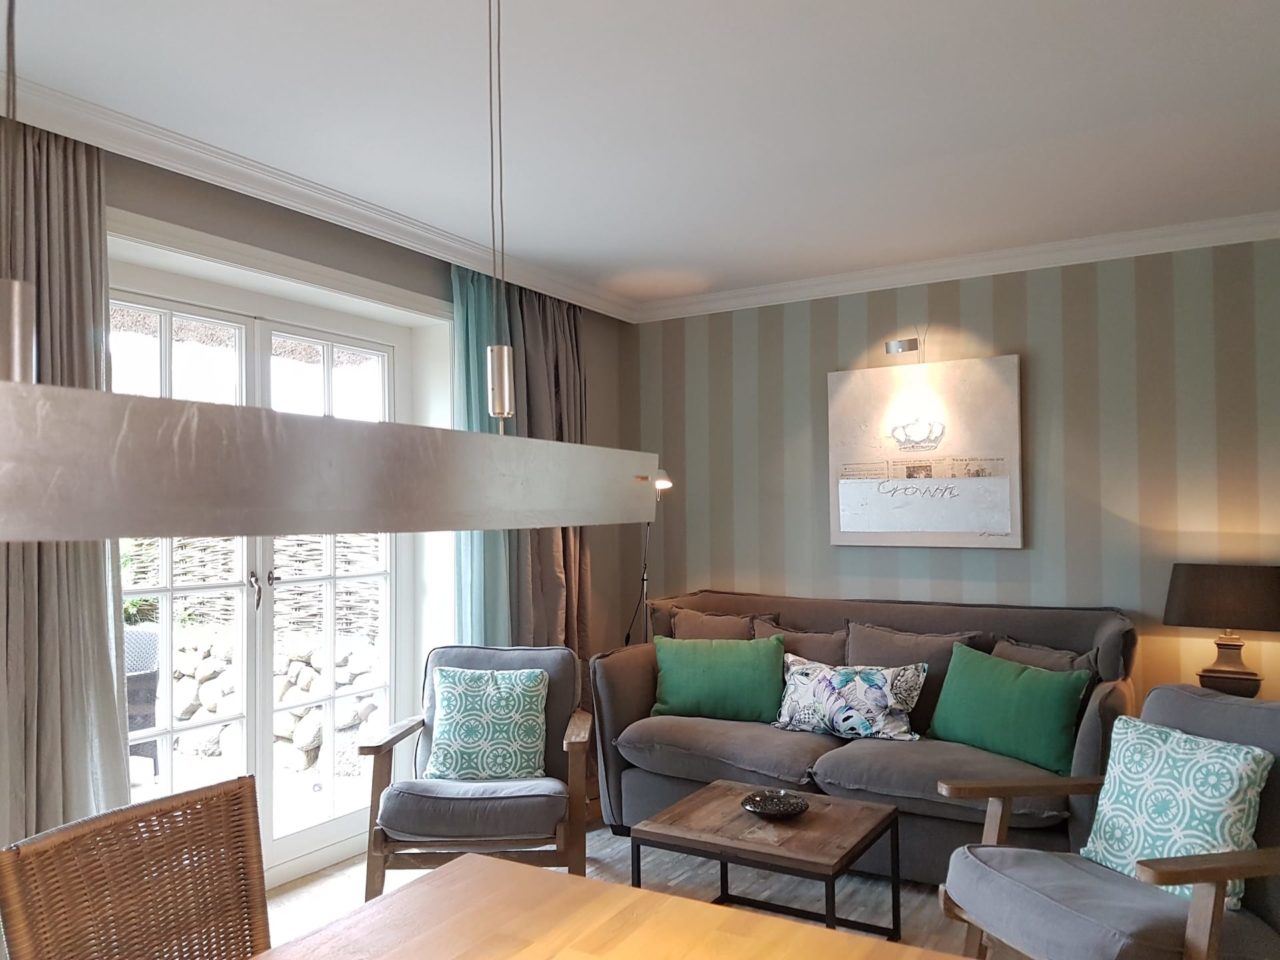 Wohnzimmer mit Sofa und Sesseln im "Seaside II" Ferienhaus in Rantum auf Sylt